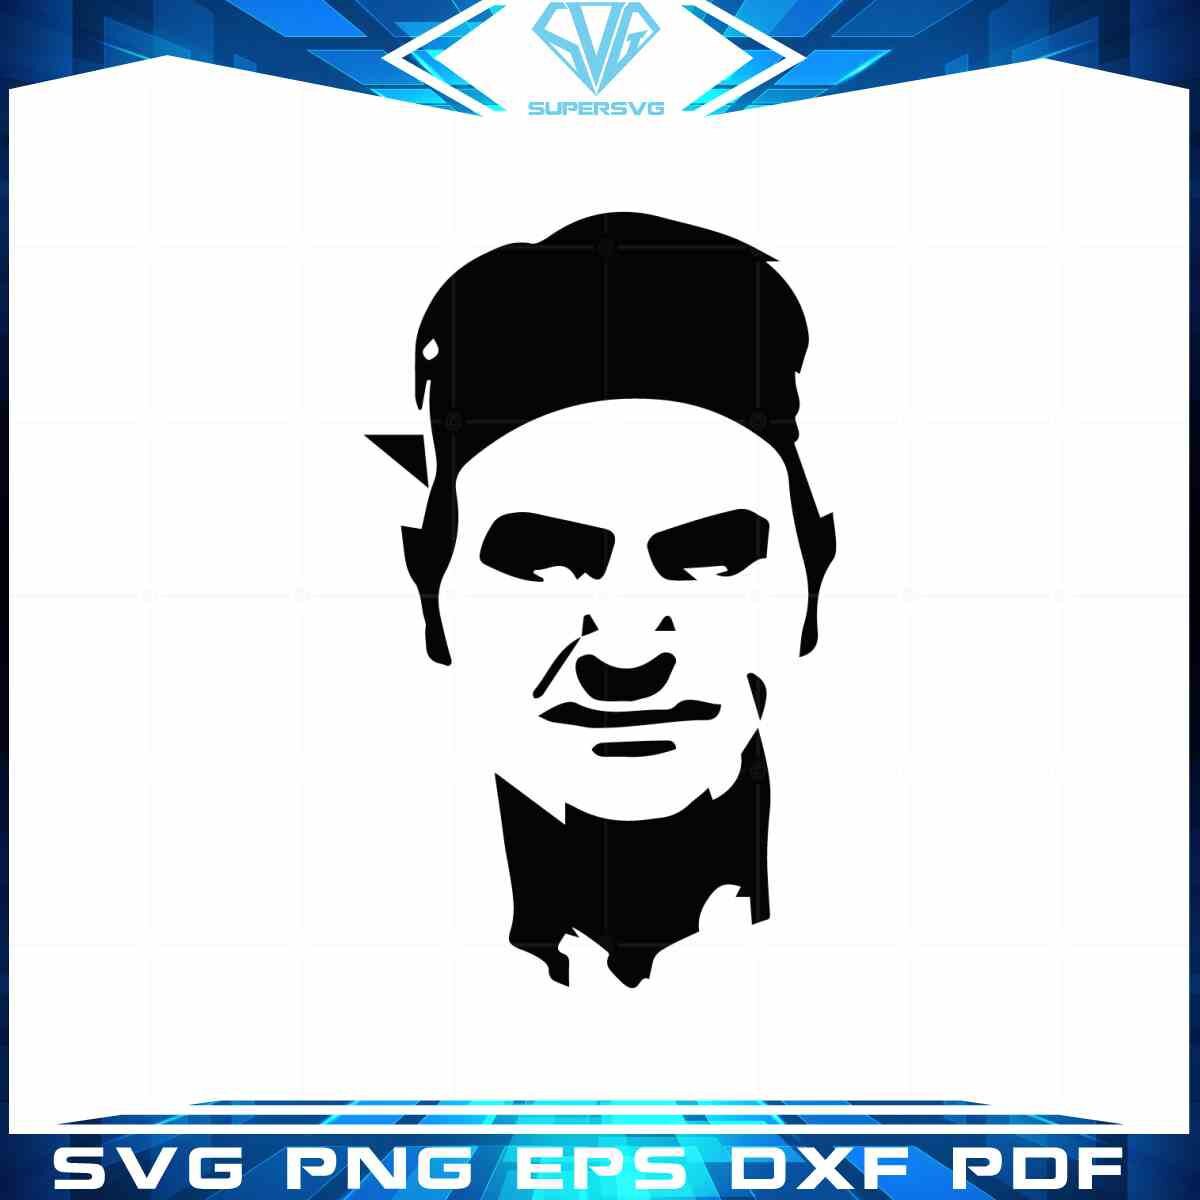 roger-federer-svg-professional-tennis-player-vector-graphic-design-file